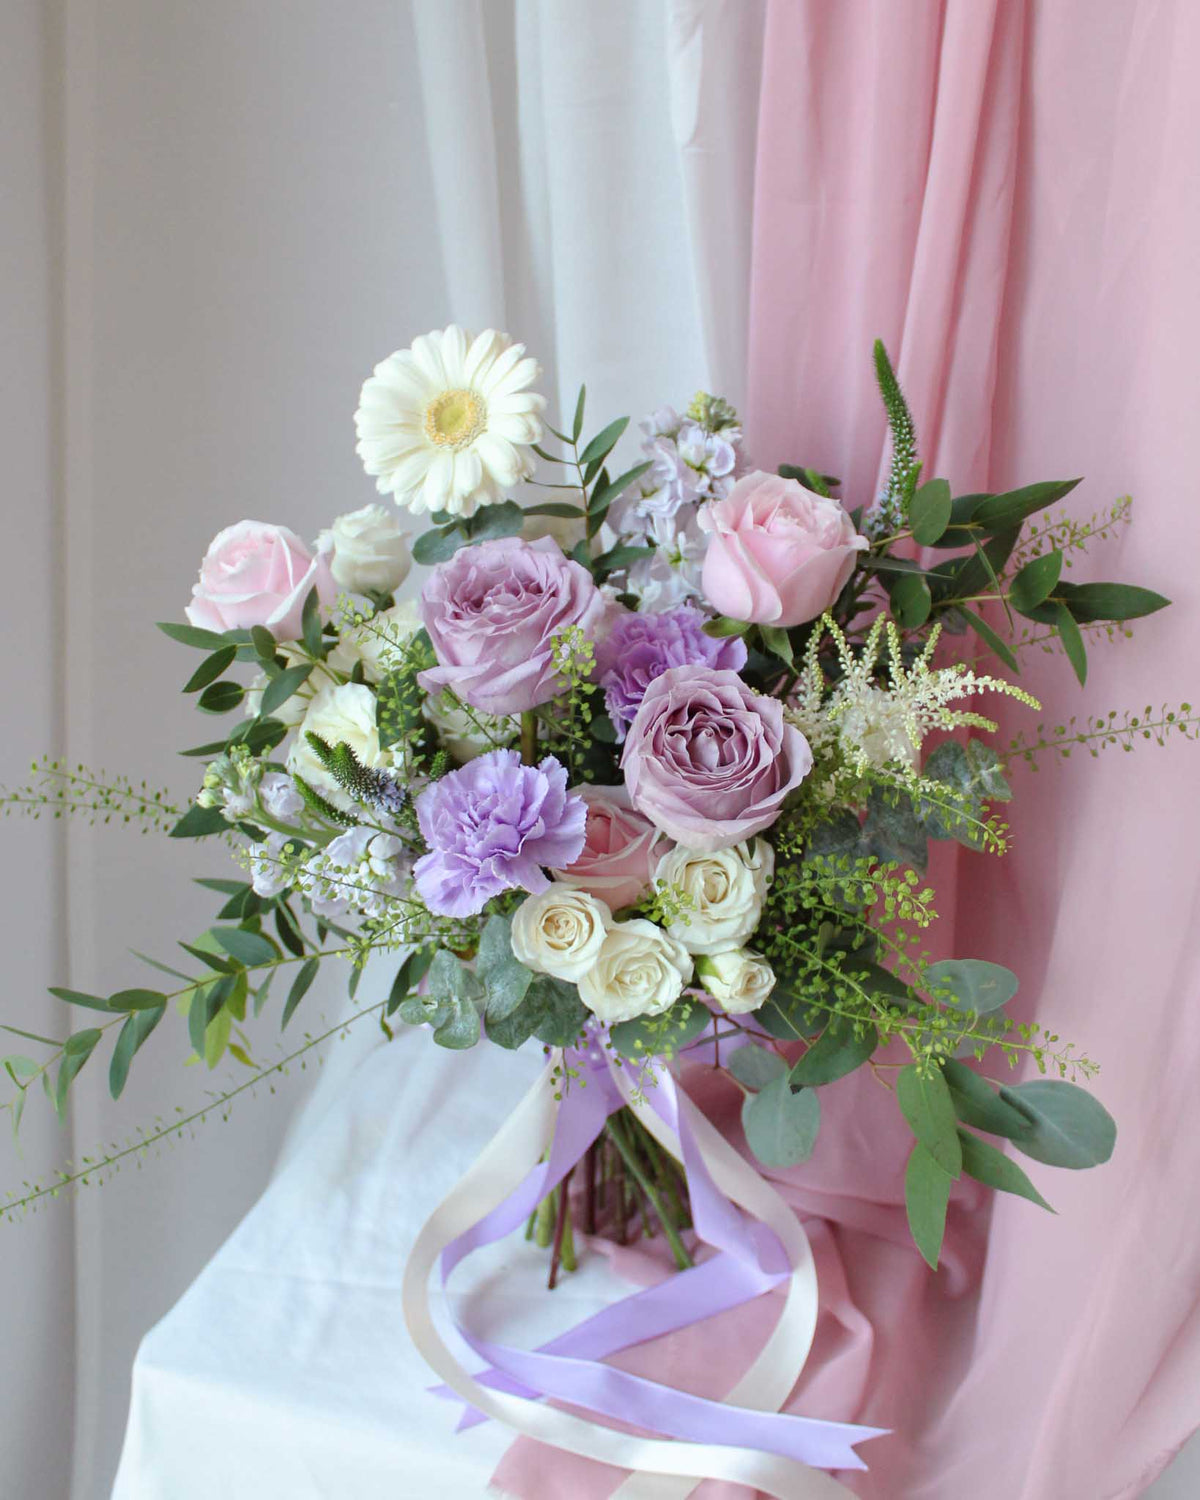 Kaori Bridal Bouquet- Frontal